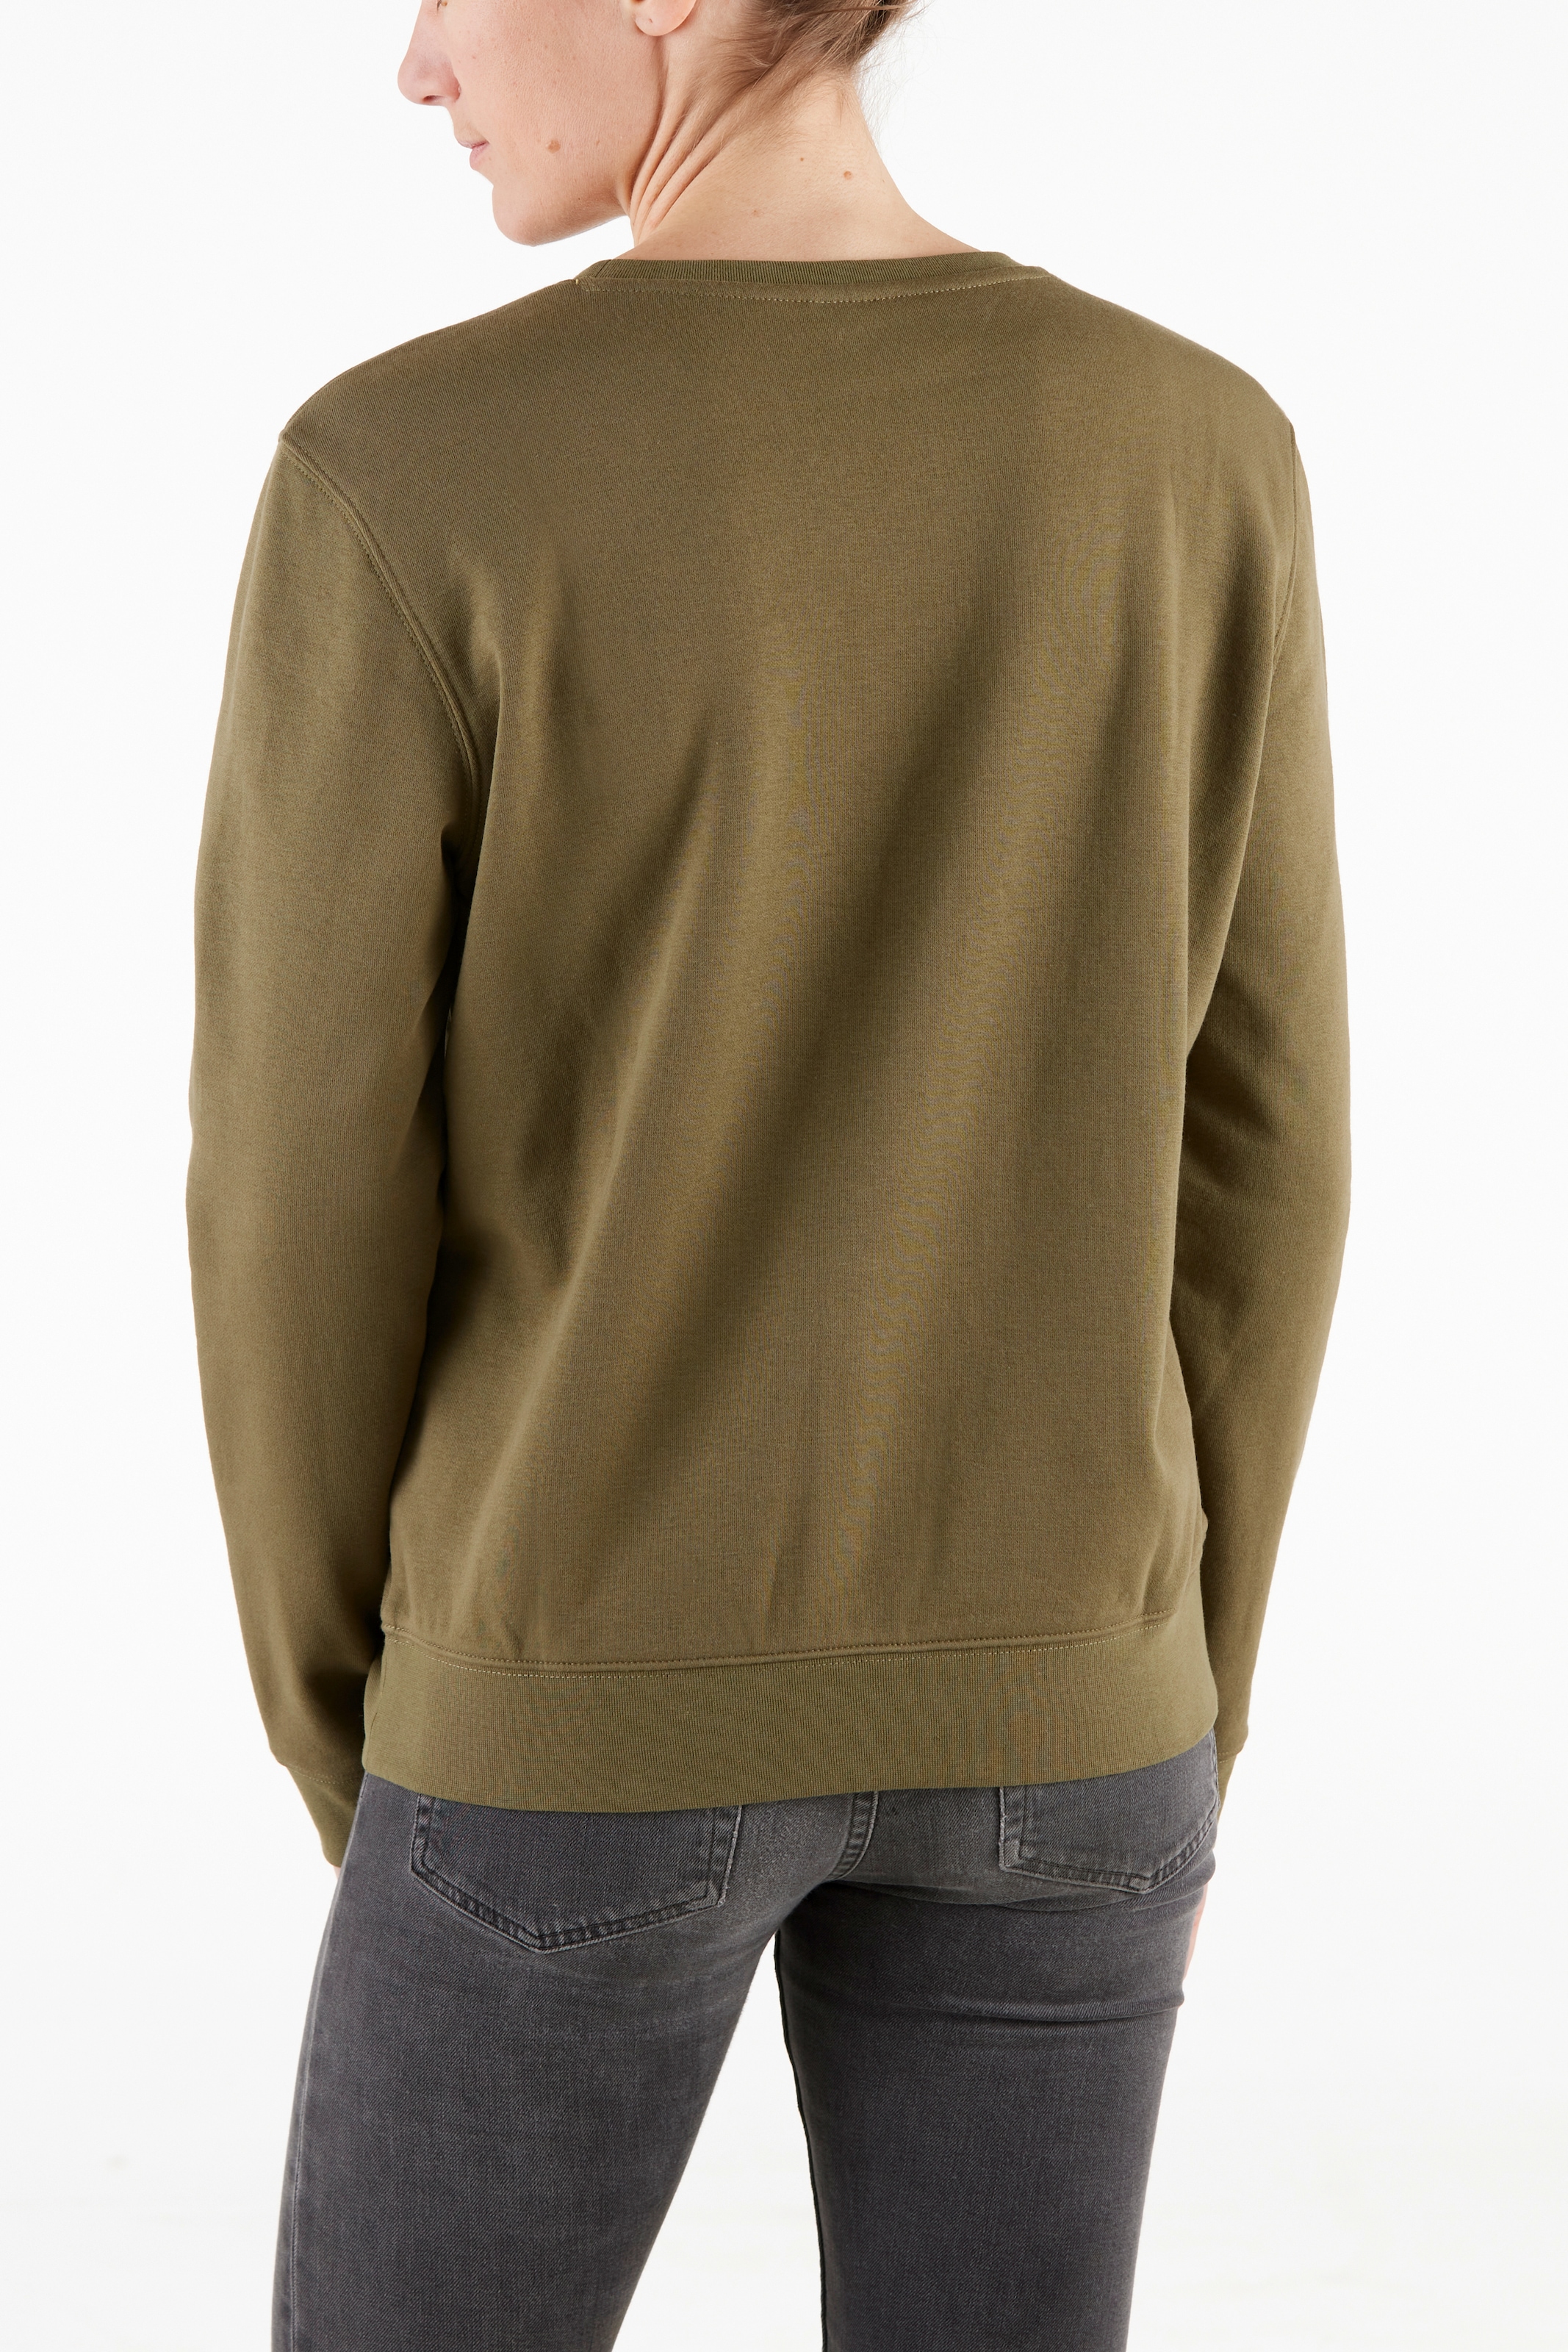 locker trägt für Baumwollmix, Northern Damen Country soften bestellen und leicht sich aus Sweatshirt,